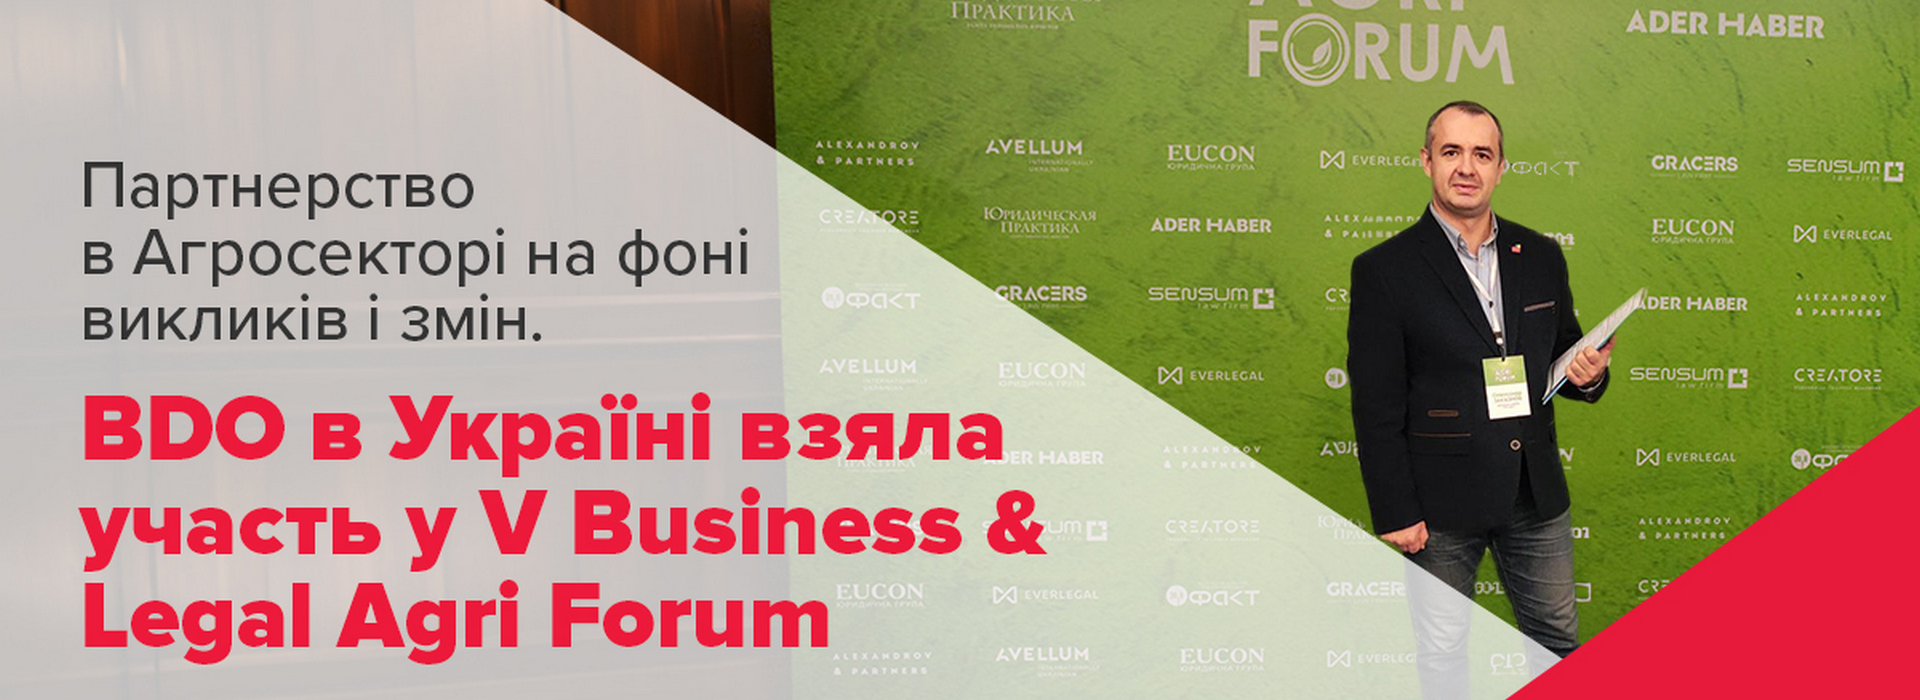 Партнерство в Агросекторі на фоні викликів і змін. BDO в Україні взяла участь у V Business & Legal Agri Forum